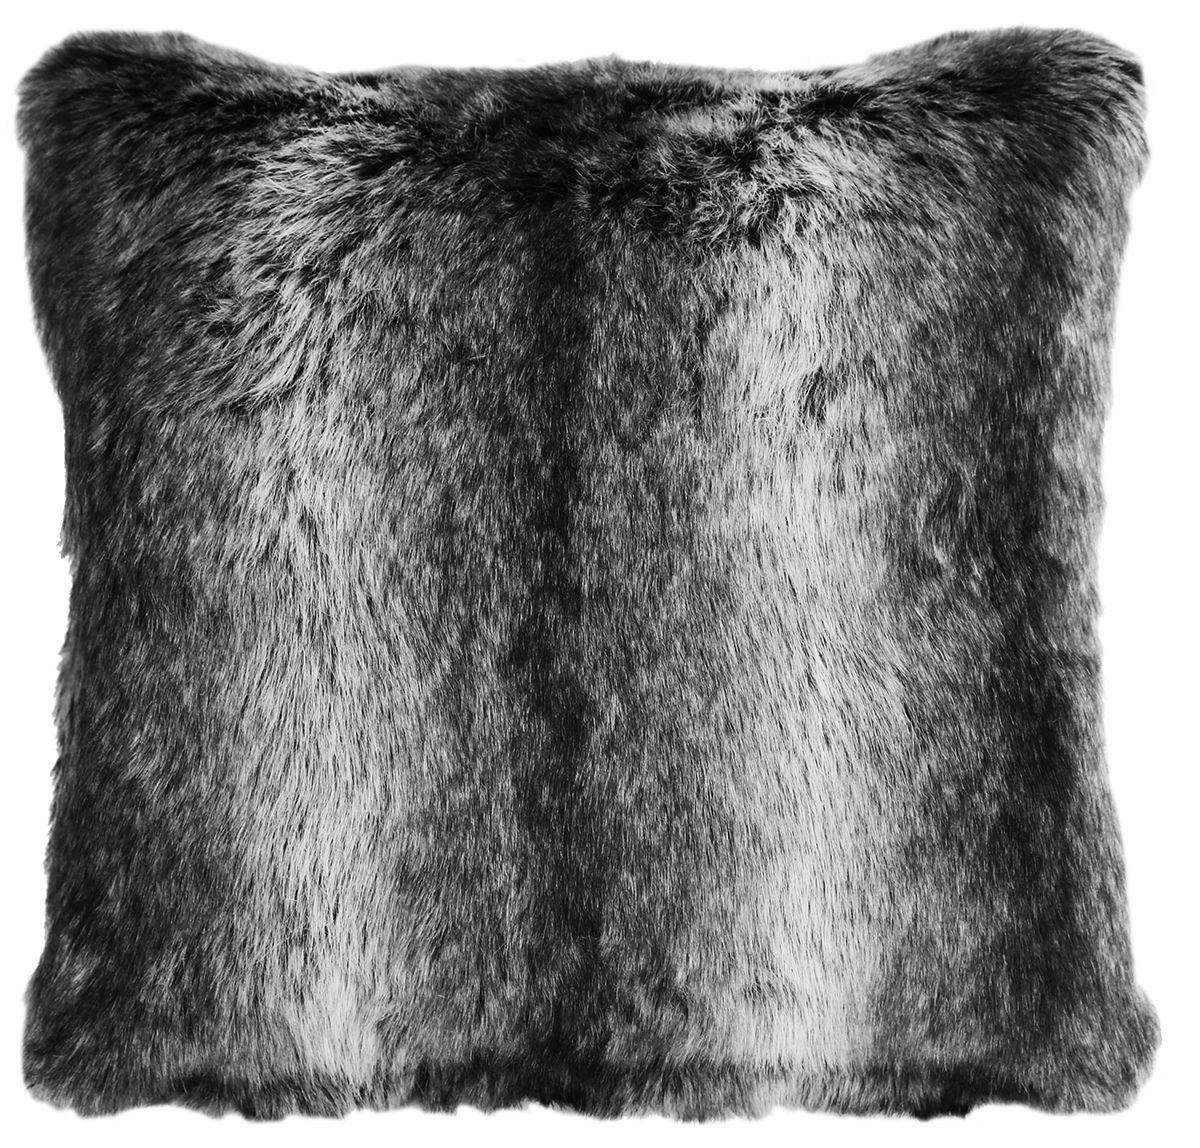 Fur Decorative Pillow